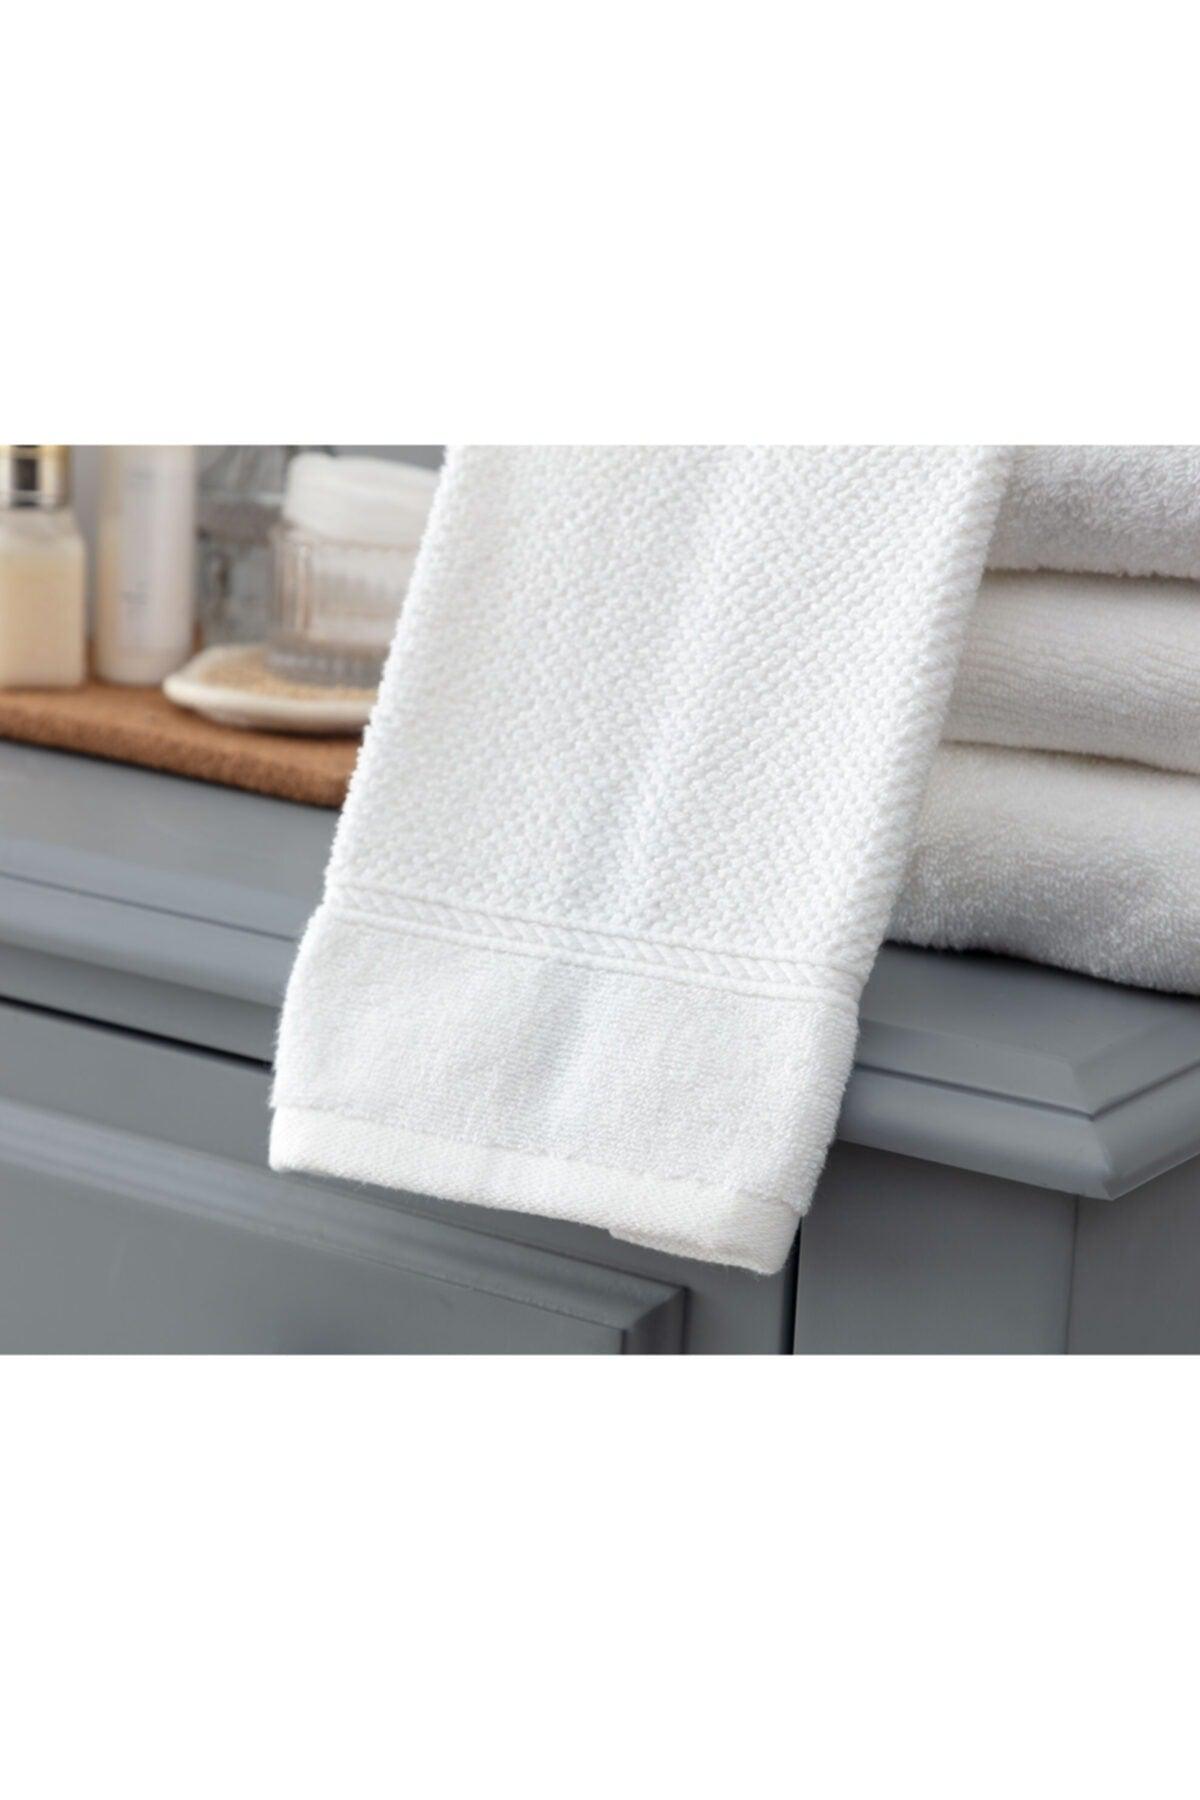 Riz Jacquard Face Towel - White - 50x90 Cm - Swordslife